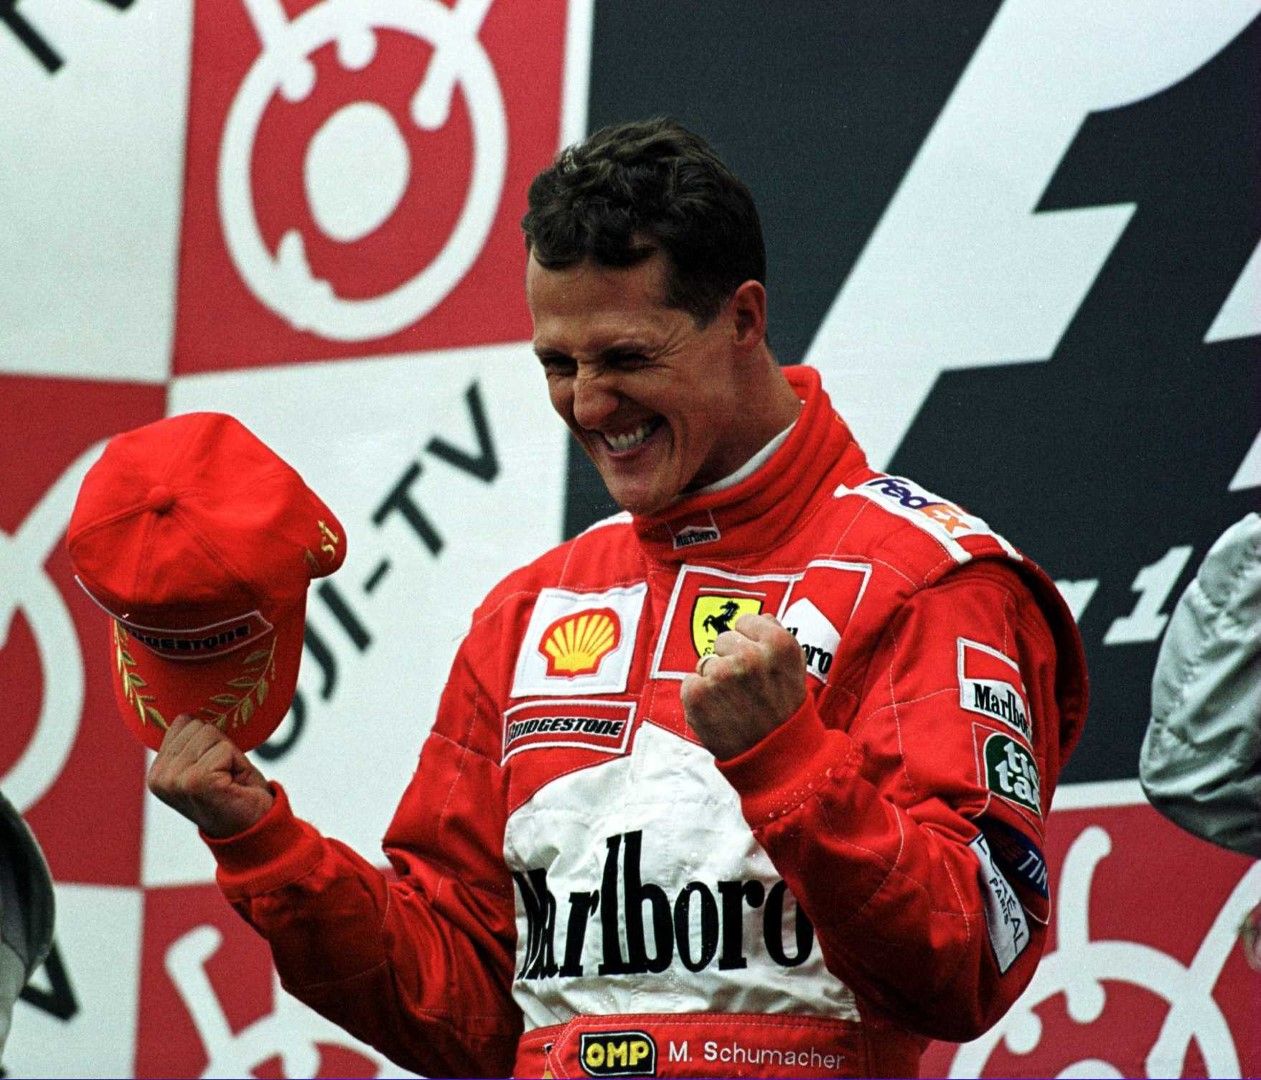 След седем Световни титли, големият шампион Михаел Шумахер слезе от болида през 2006-а и пое роля на консултант във "Ферари", където приключи като пилот. През февруари 2010-а, вече на 41 години, Шуми се качи в колата на "Мерцедес" и обяви, че ще кара в следващия сезон. Разбира се, той не спечели осма титла, но записа няколко отлични състезания в 58 старта след завръщането с общо 197 точки.